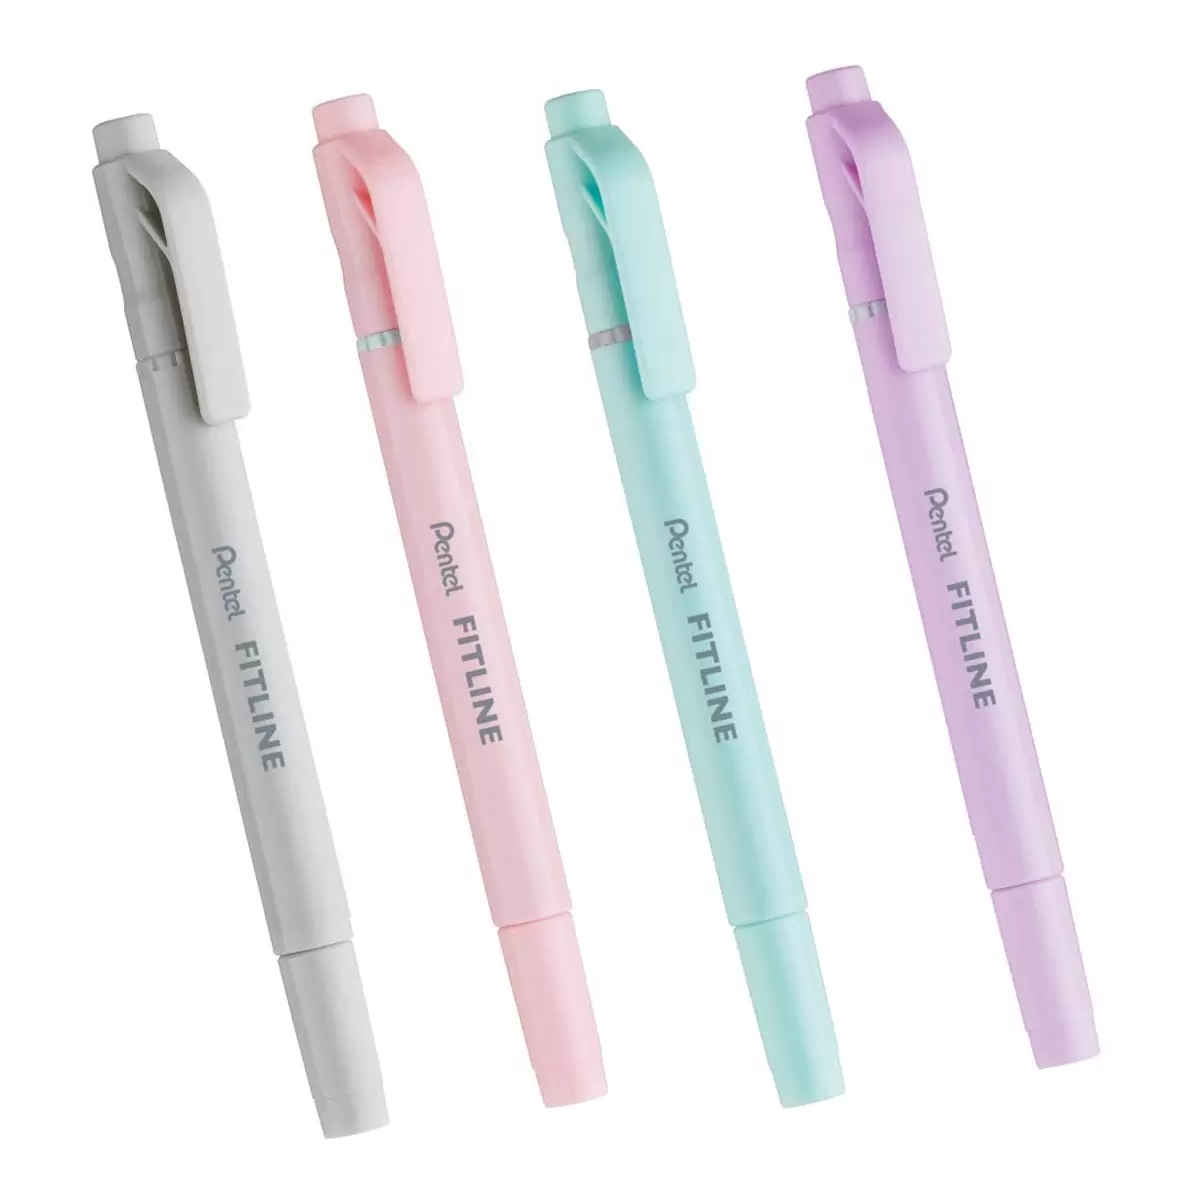 Pentel Fitline 雙頭螢光筆 20入裝 粉彩灰 + 粉彩粉紅 + 粉彩天藍 + 粉彩紫